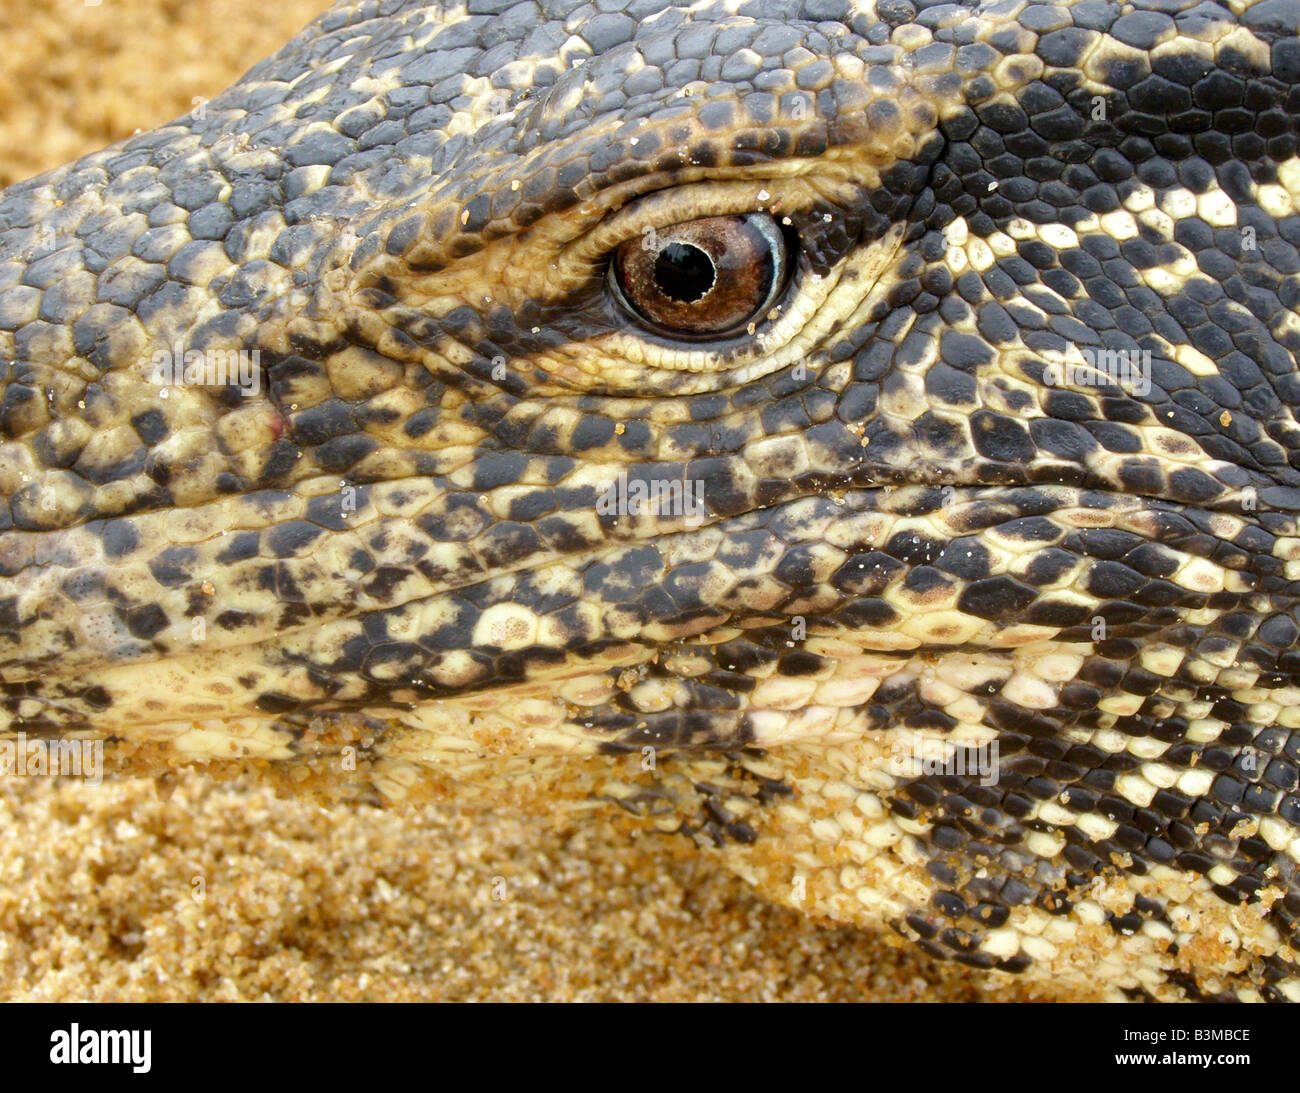 Close-up of face mouchetée de sable de l'eau Asie varan (Varanus salvator) avec détail des échelles et des yeux reptiliens, Sri Lanka Banque D'Images